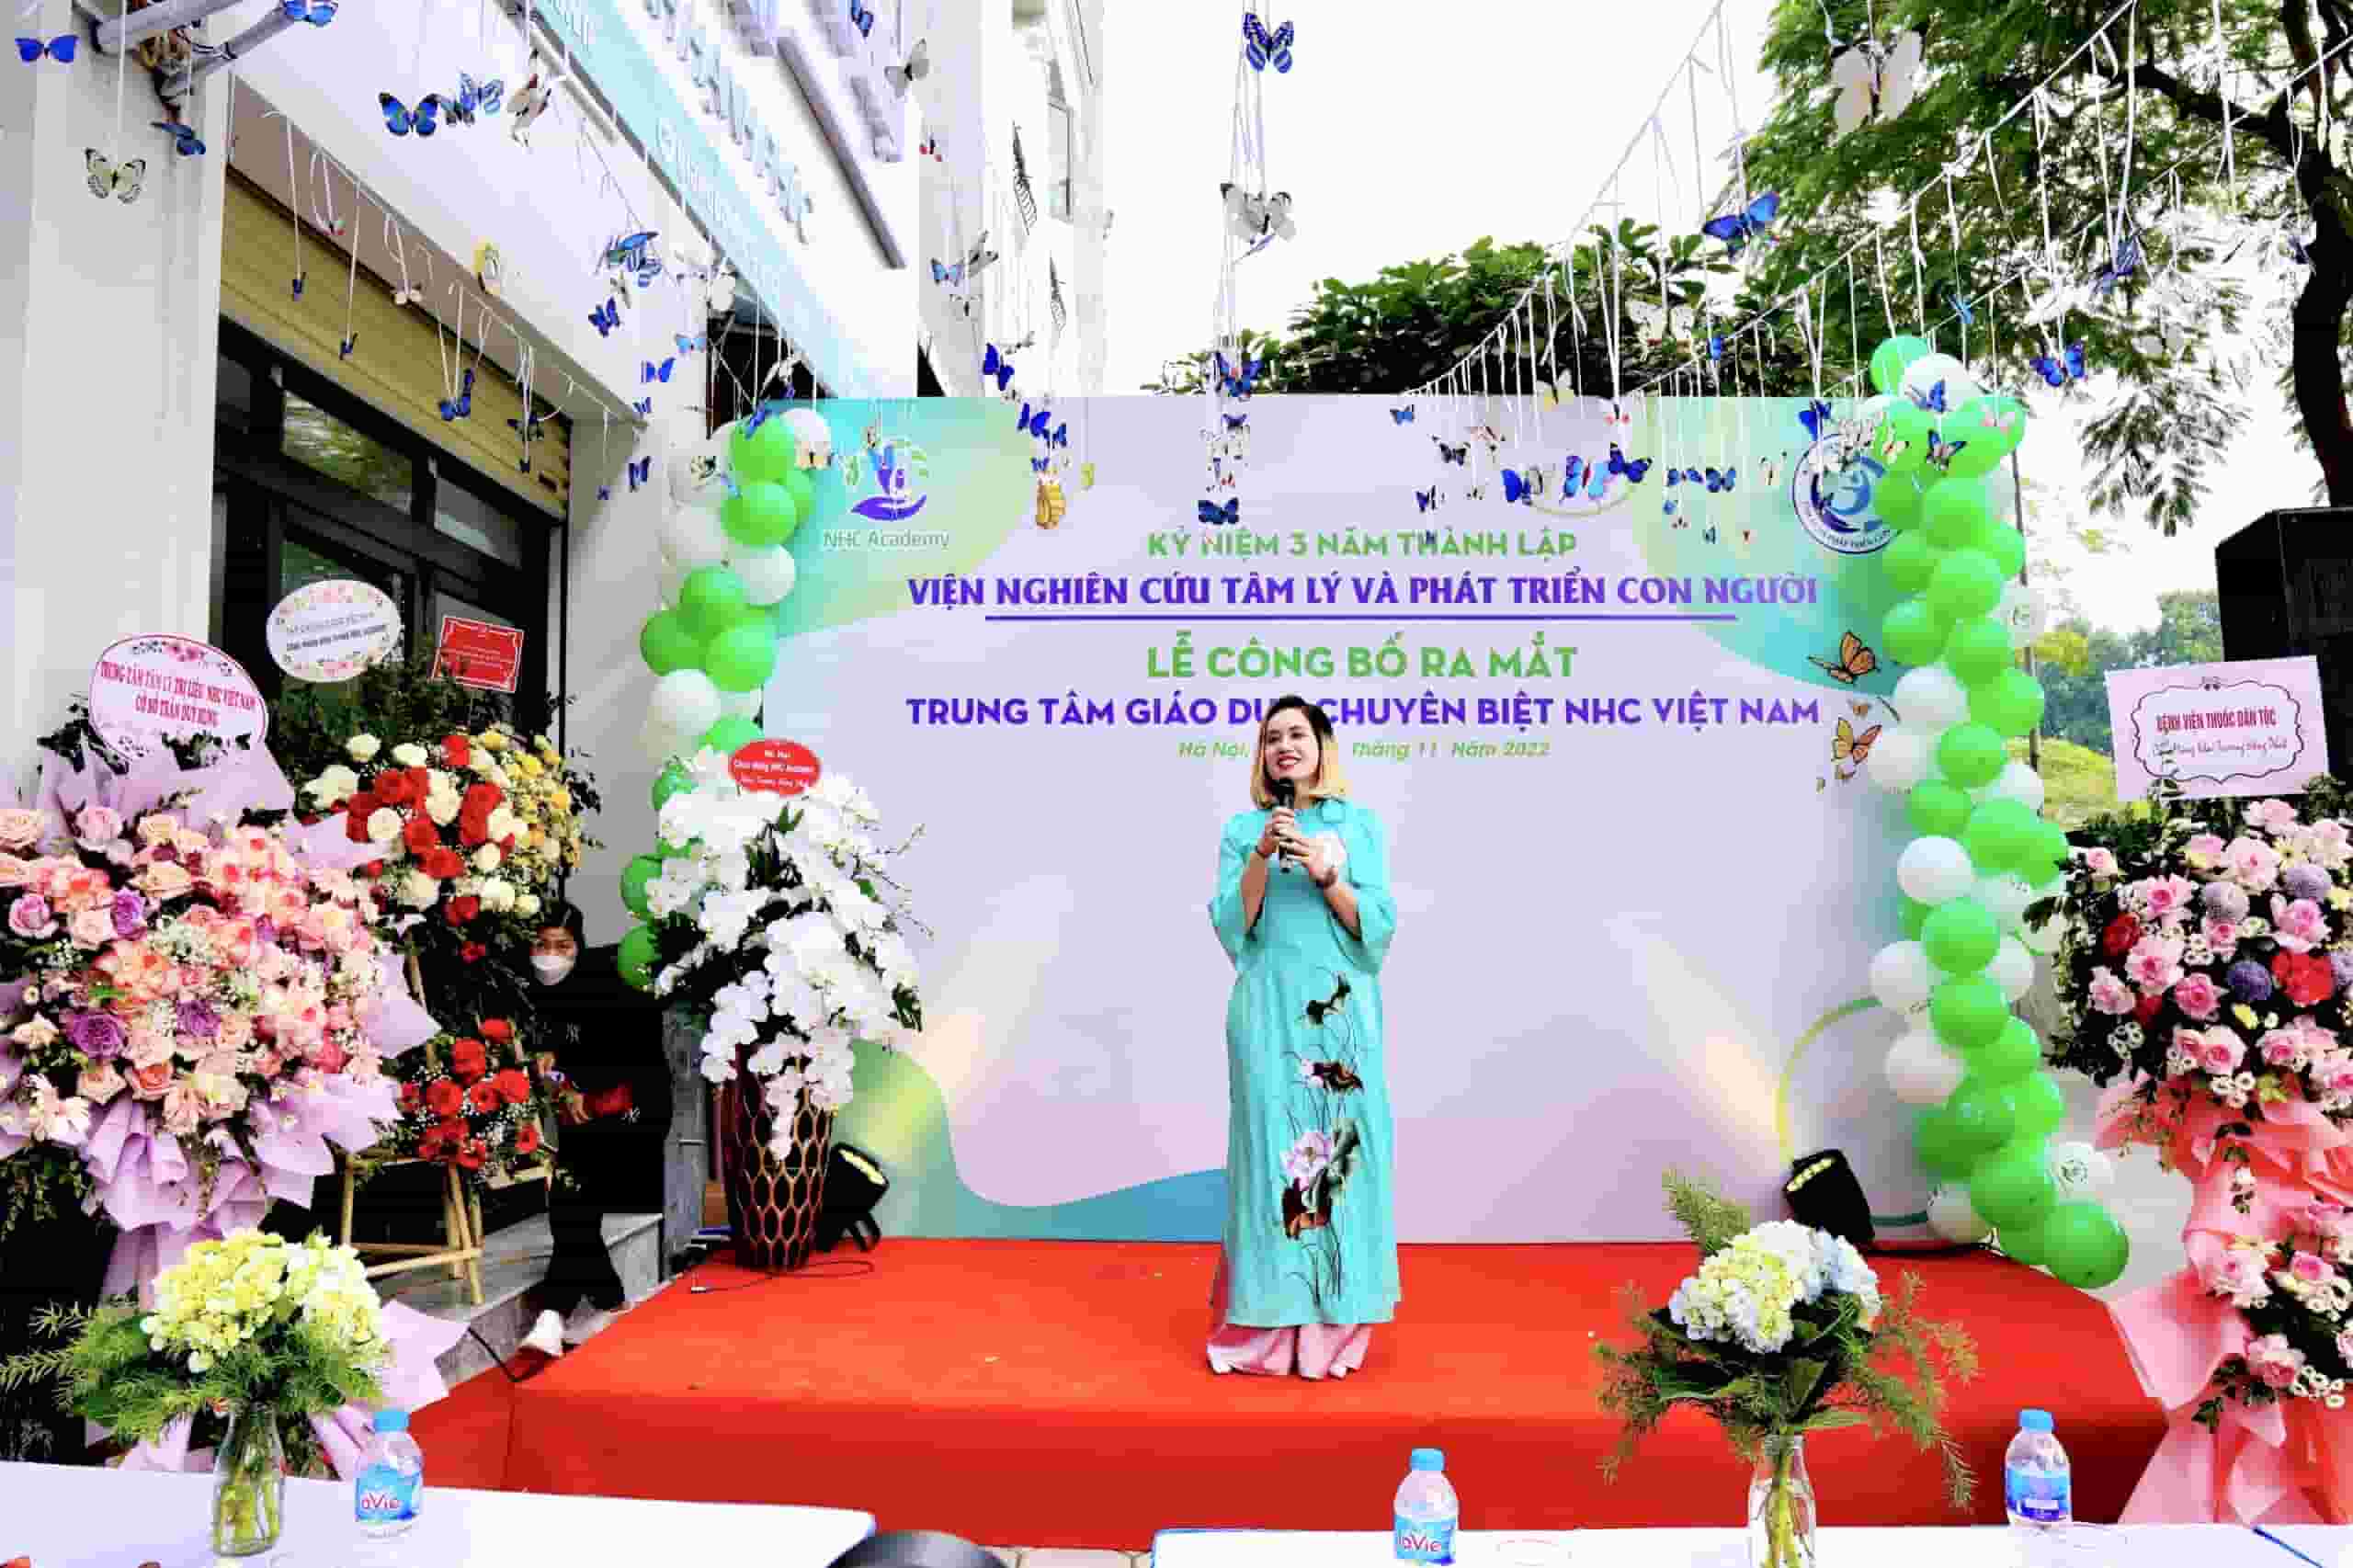 Bà Bùi Thị Hải Yến - Phó Chủ tịch Hội đồng quản trị chia sẻ về tầm nhìn sứ mệnh của Trung tâm Giáo dục Chuyên biệt NHC Việt Nam.